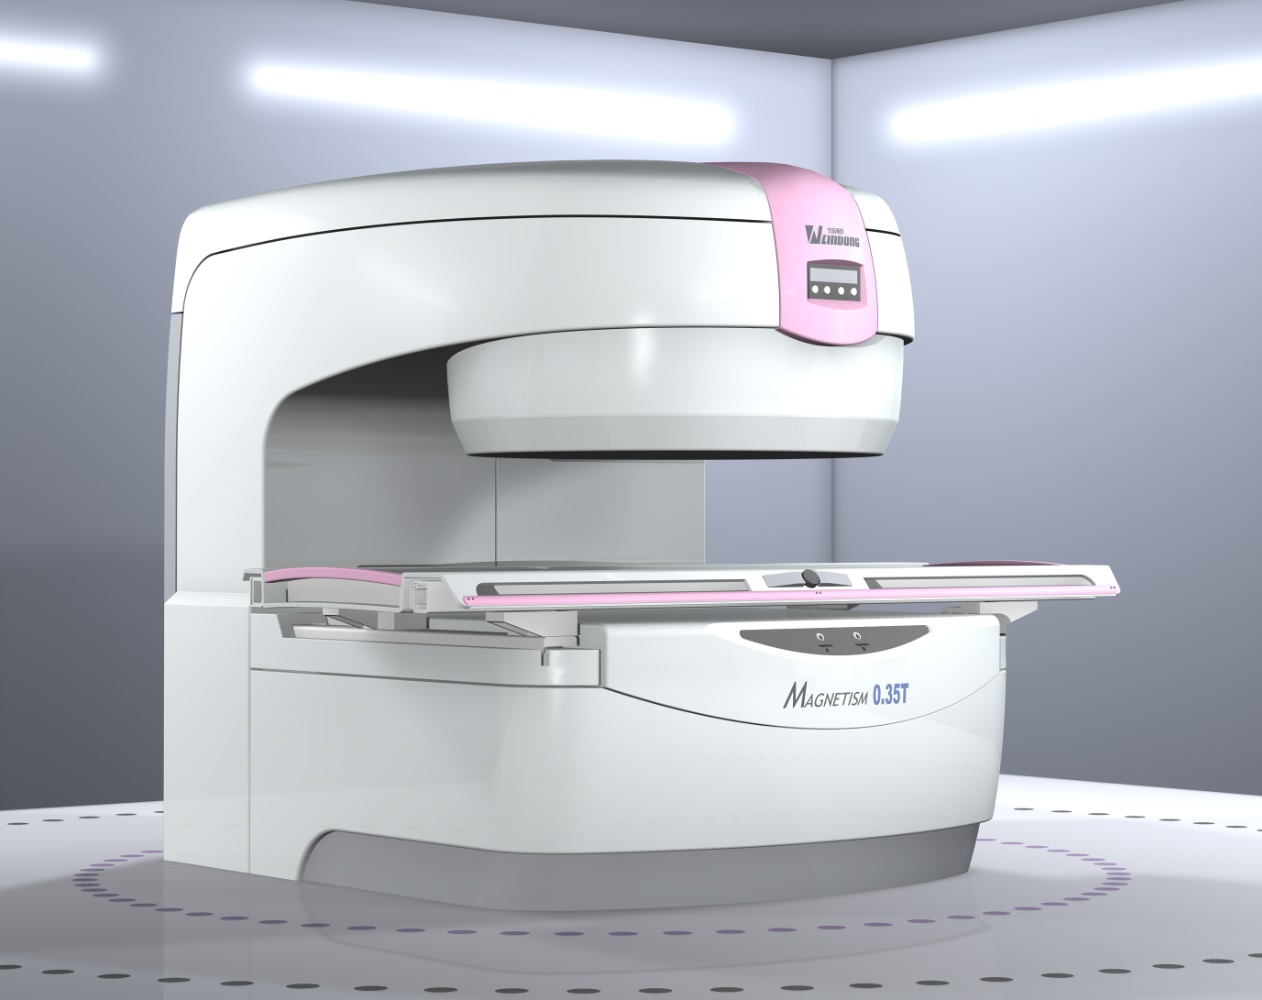 潍坊高新区人民医院高端1.5T MRI(磁共振)正式投入启用， 最新一代1.5T磁共振是何方“神器”？_检查